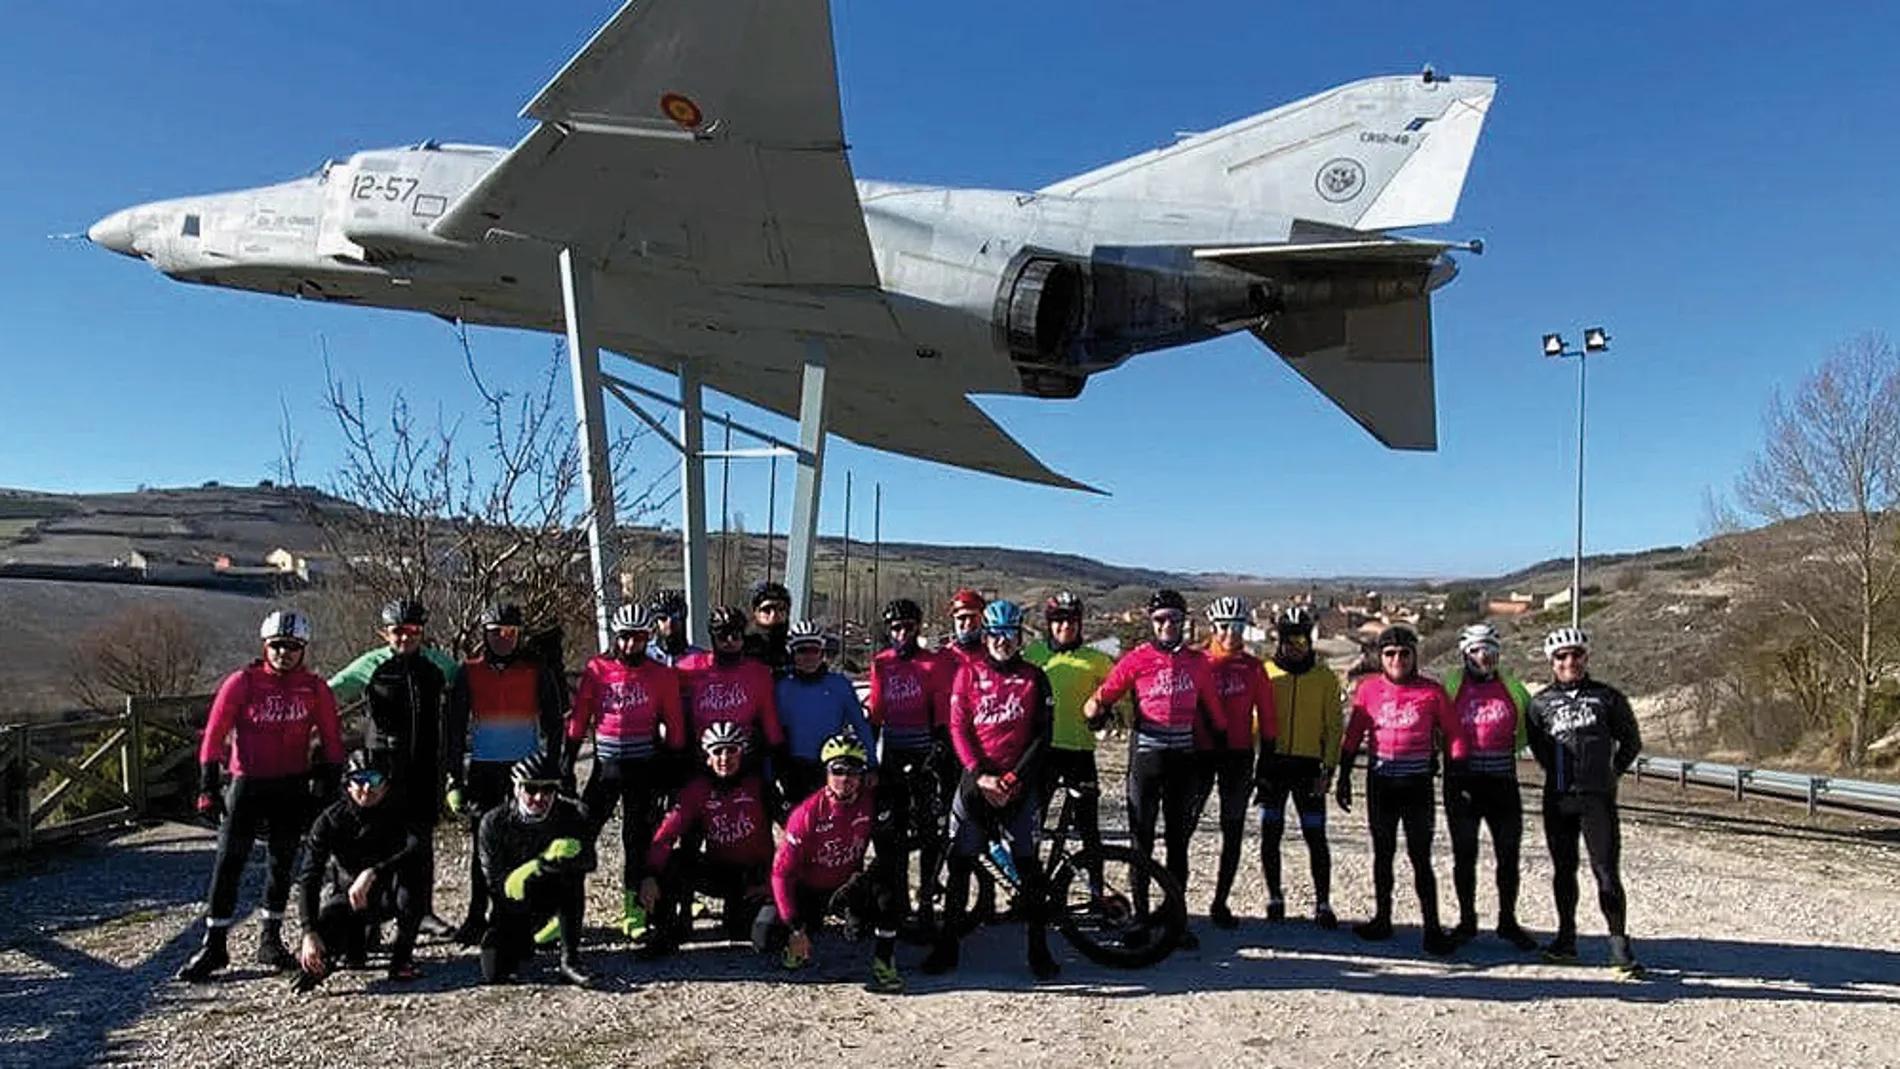 La Diputación de Palencia pone en marcha seis nuevas rutas cicloturistas denominadas "Cyclope Road Racing Series"